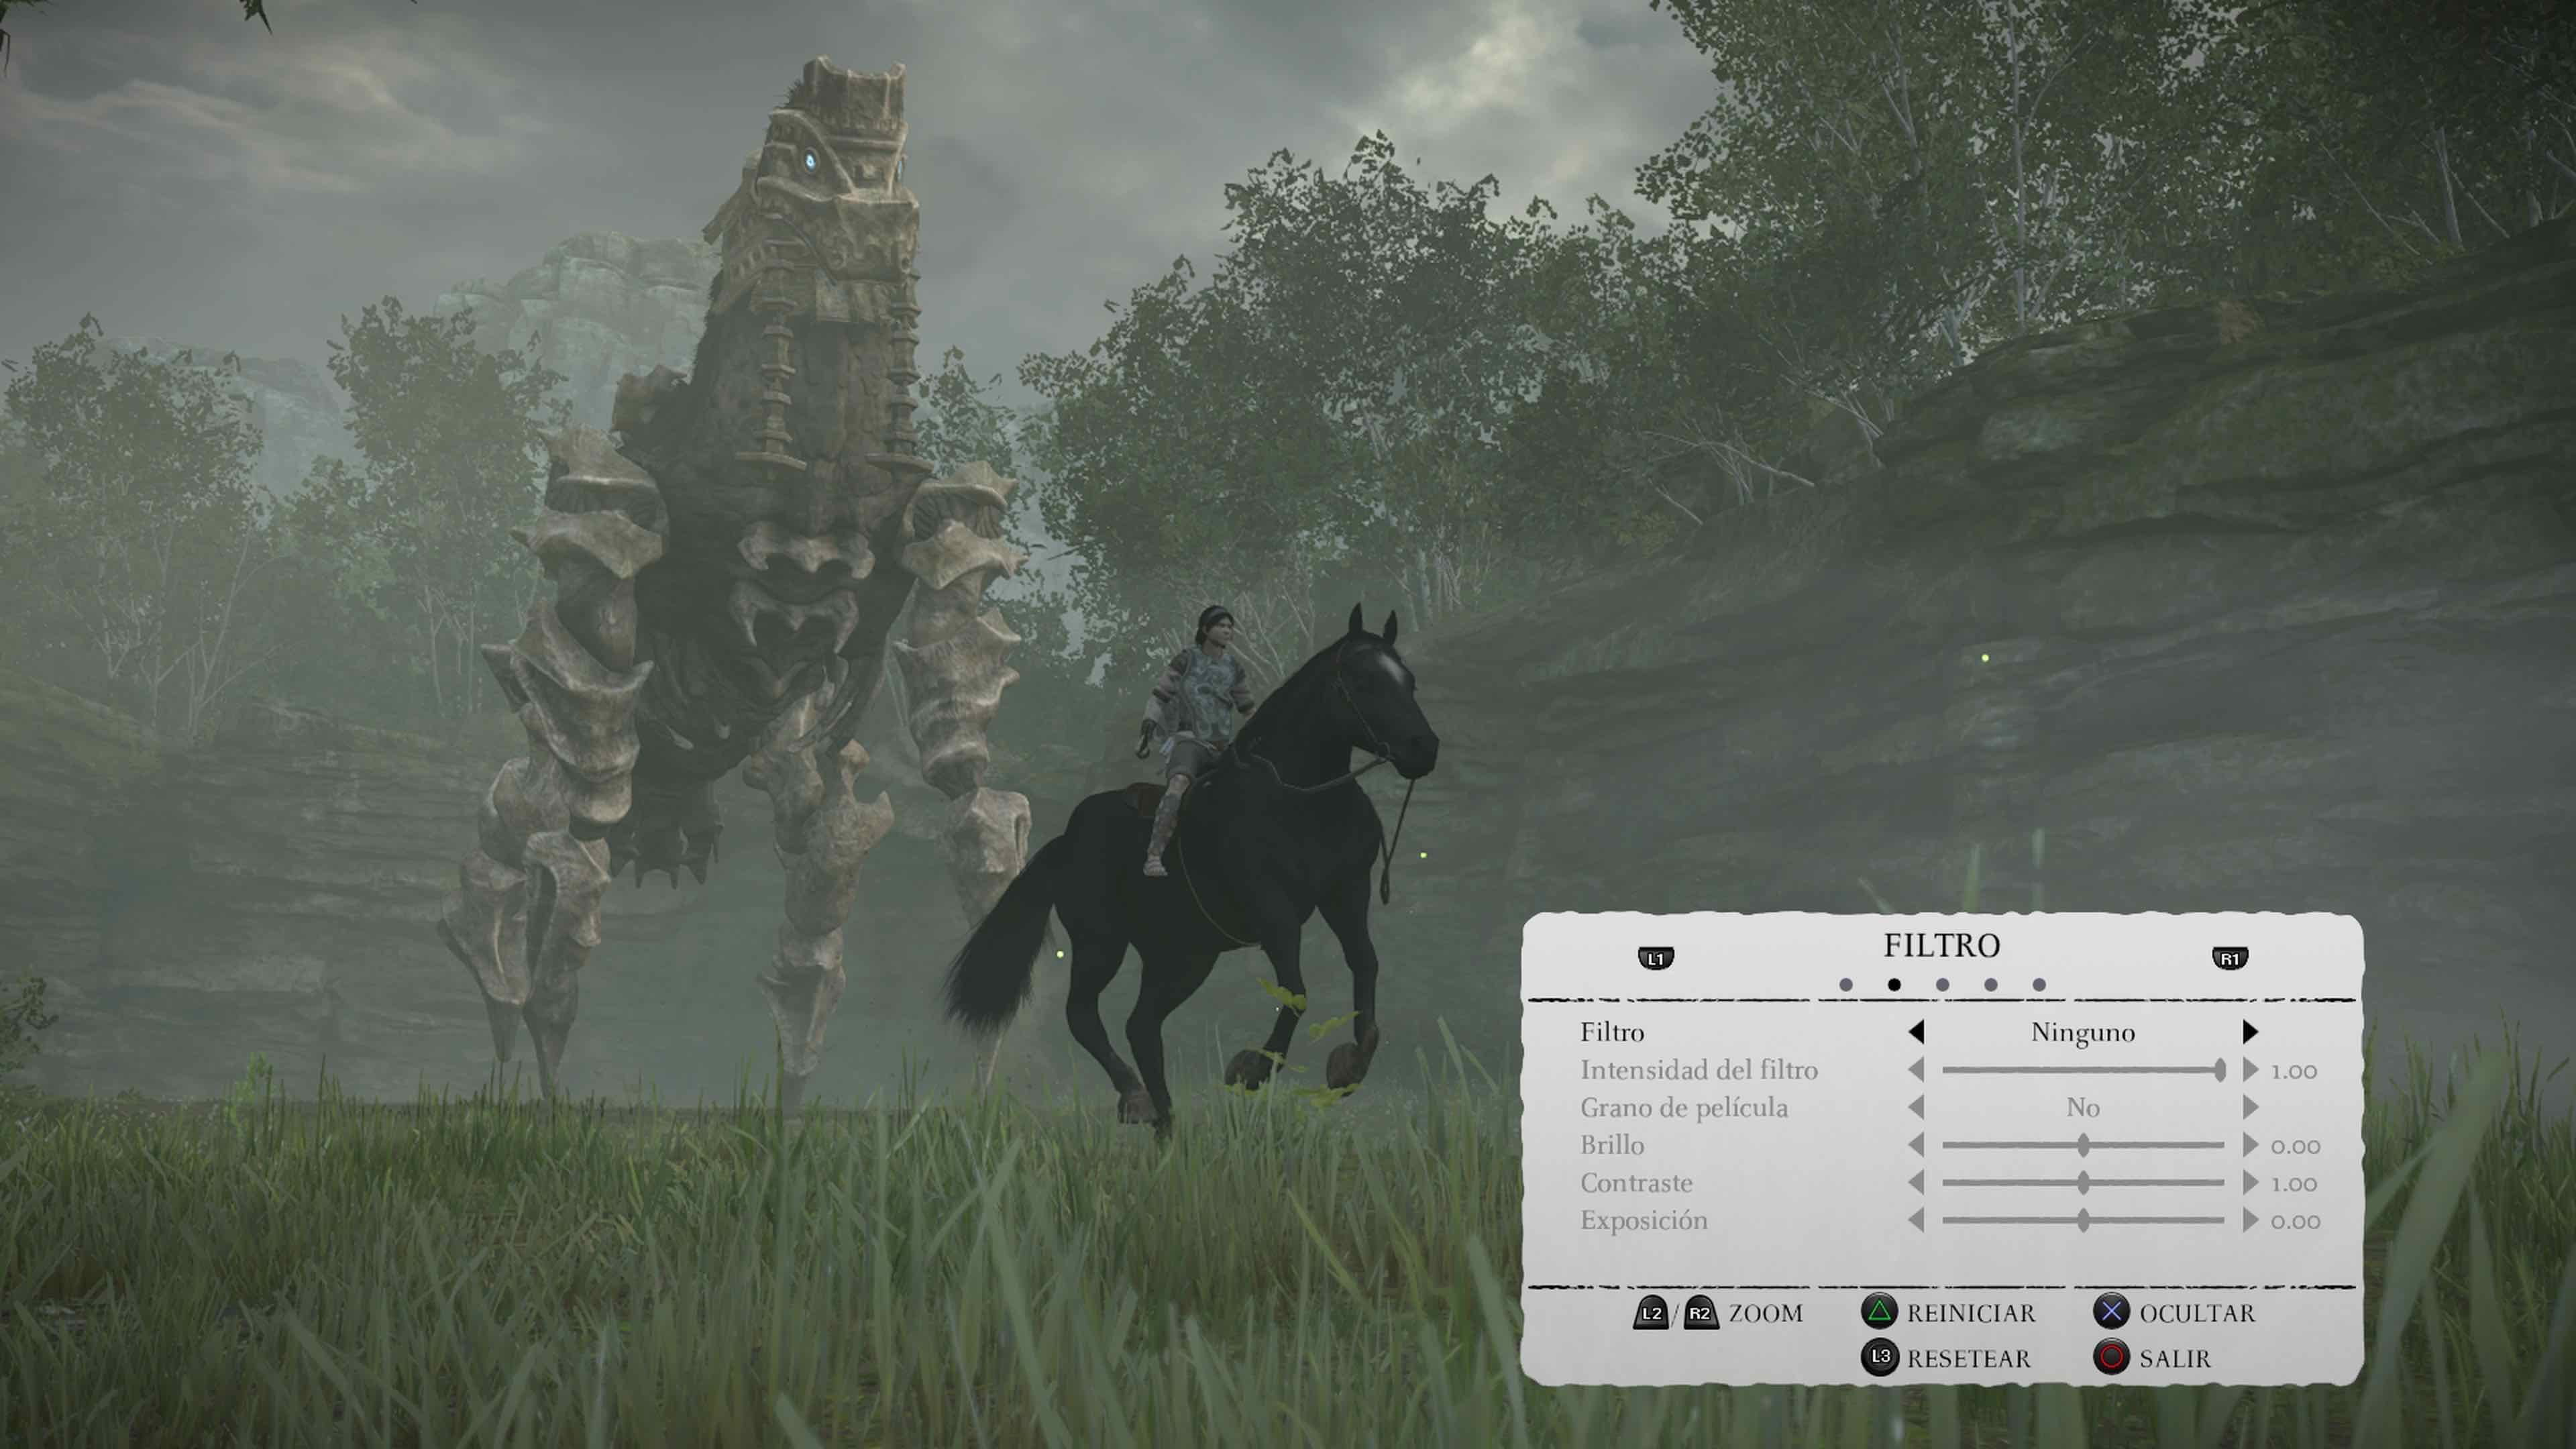 Shadow of the Colossus en PS4 cuenta con un modo foto que te permitirá inmortalizar tus mejores momentos, añadiendo filtros y otros efectos.